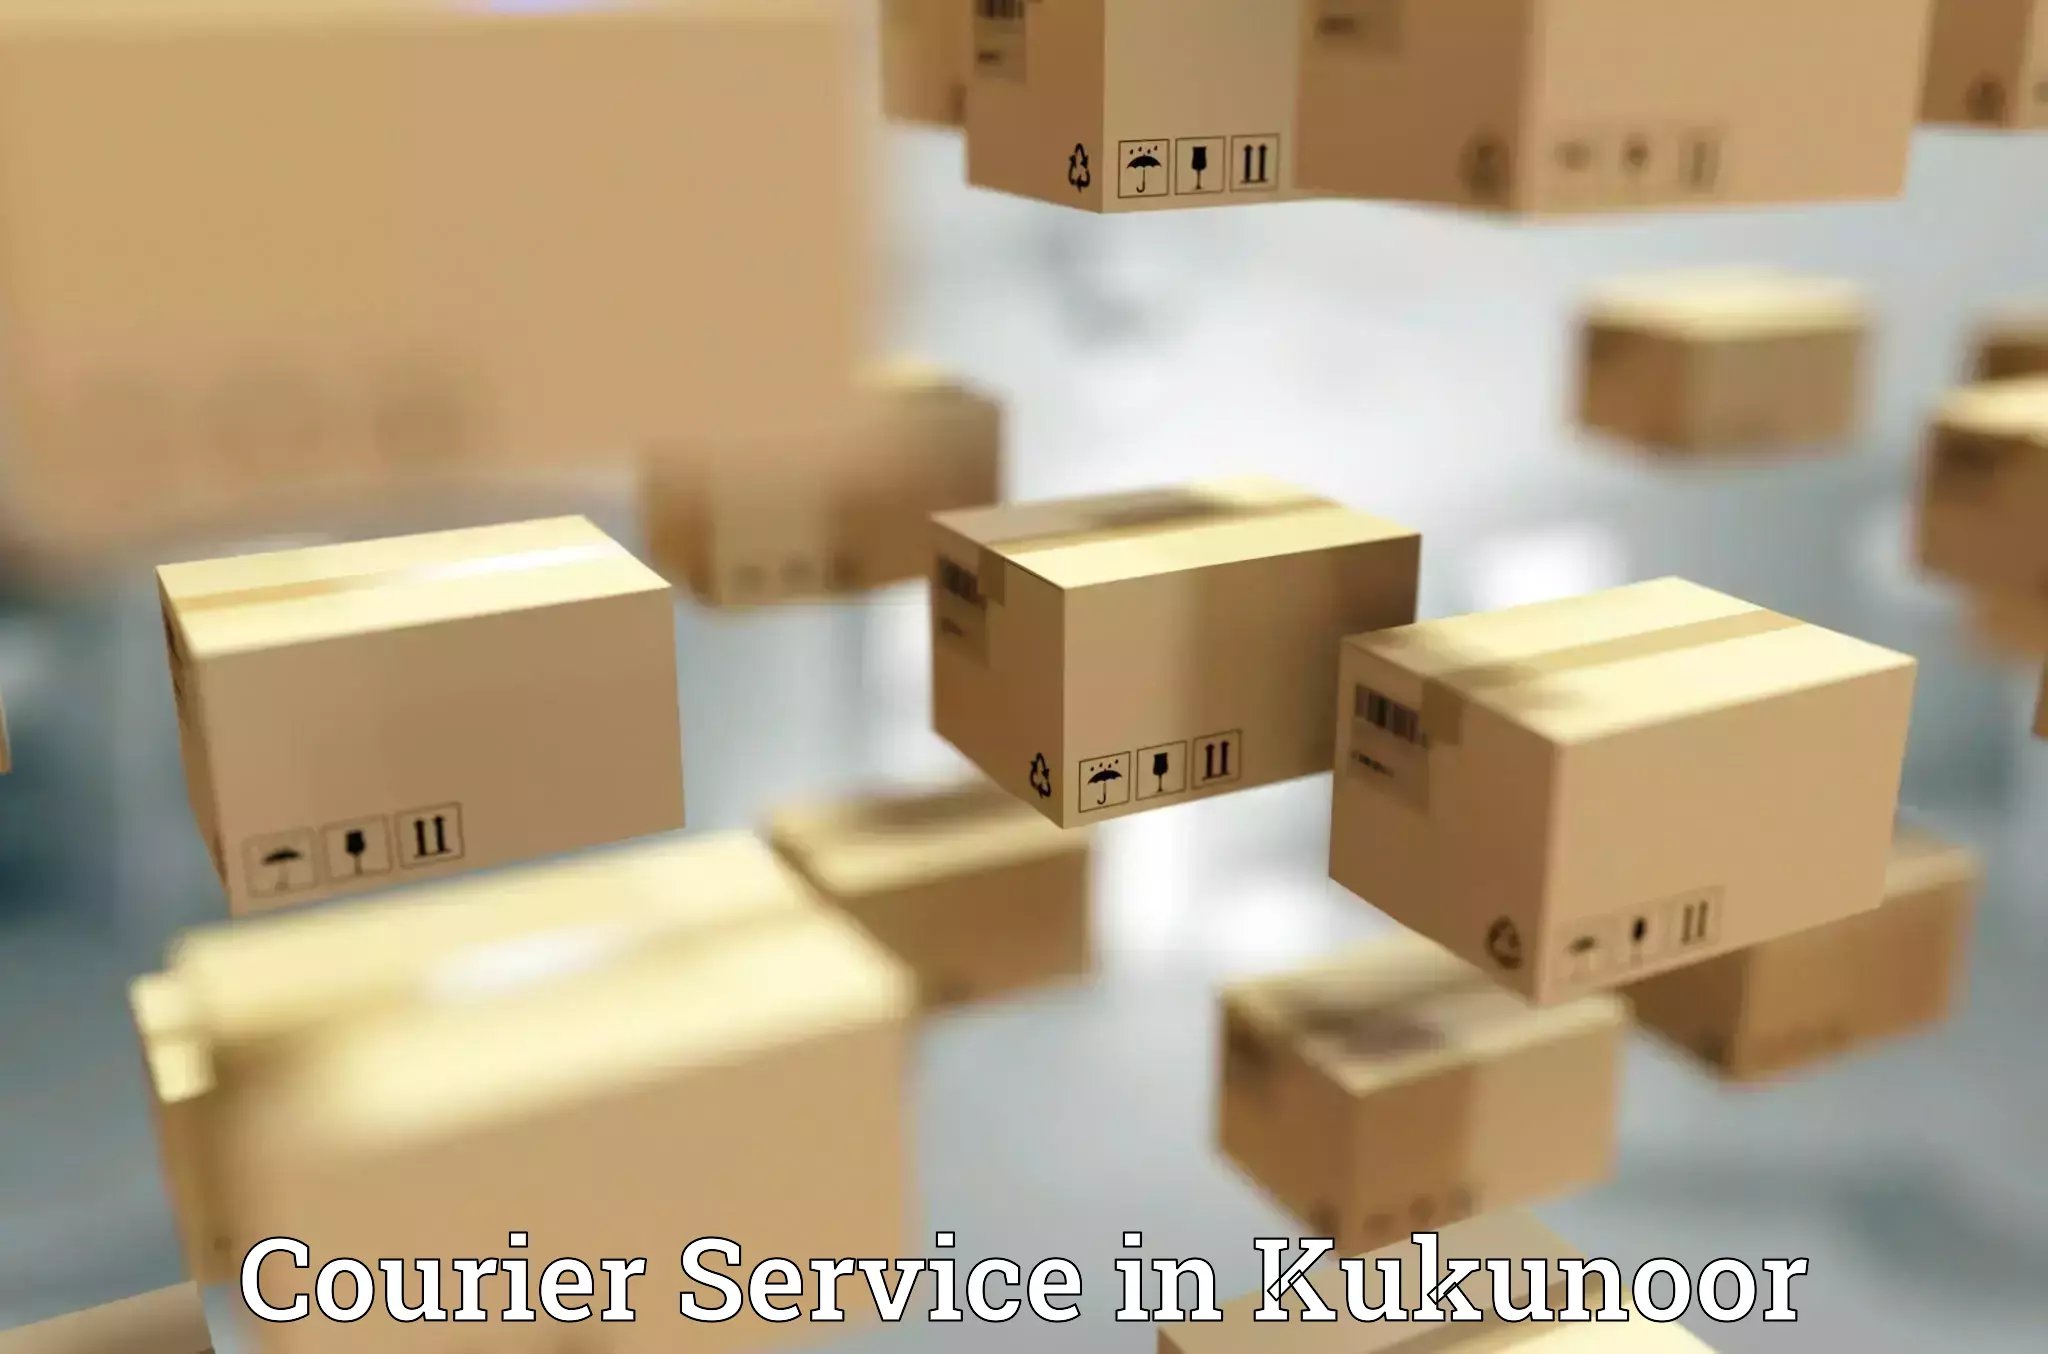 Innovative courier solutions in Kukunoor